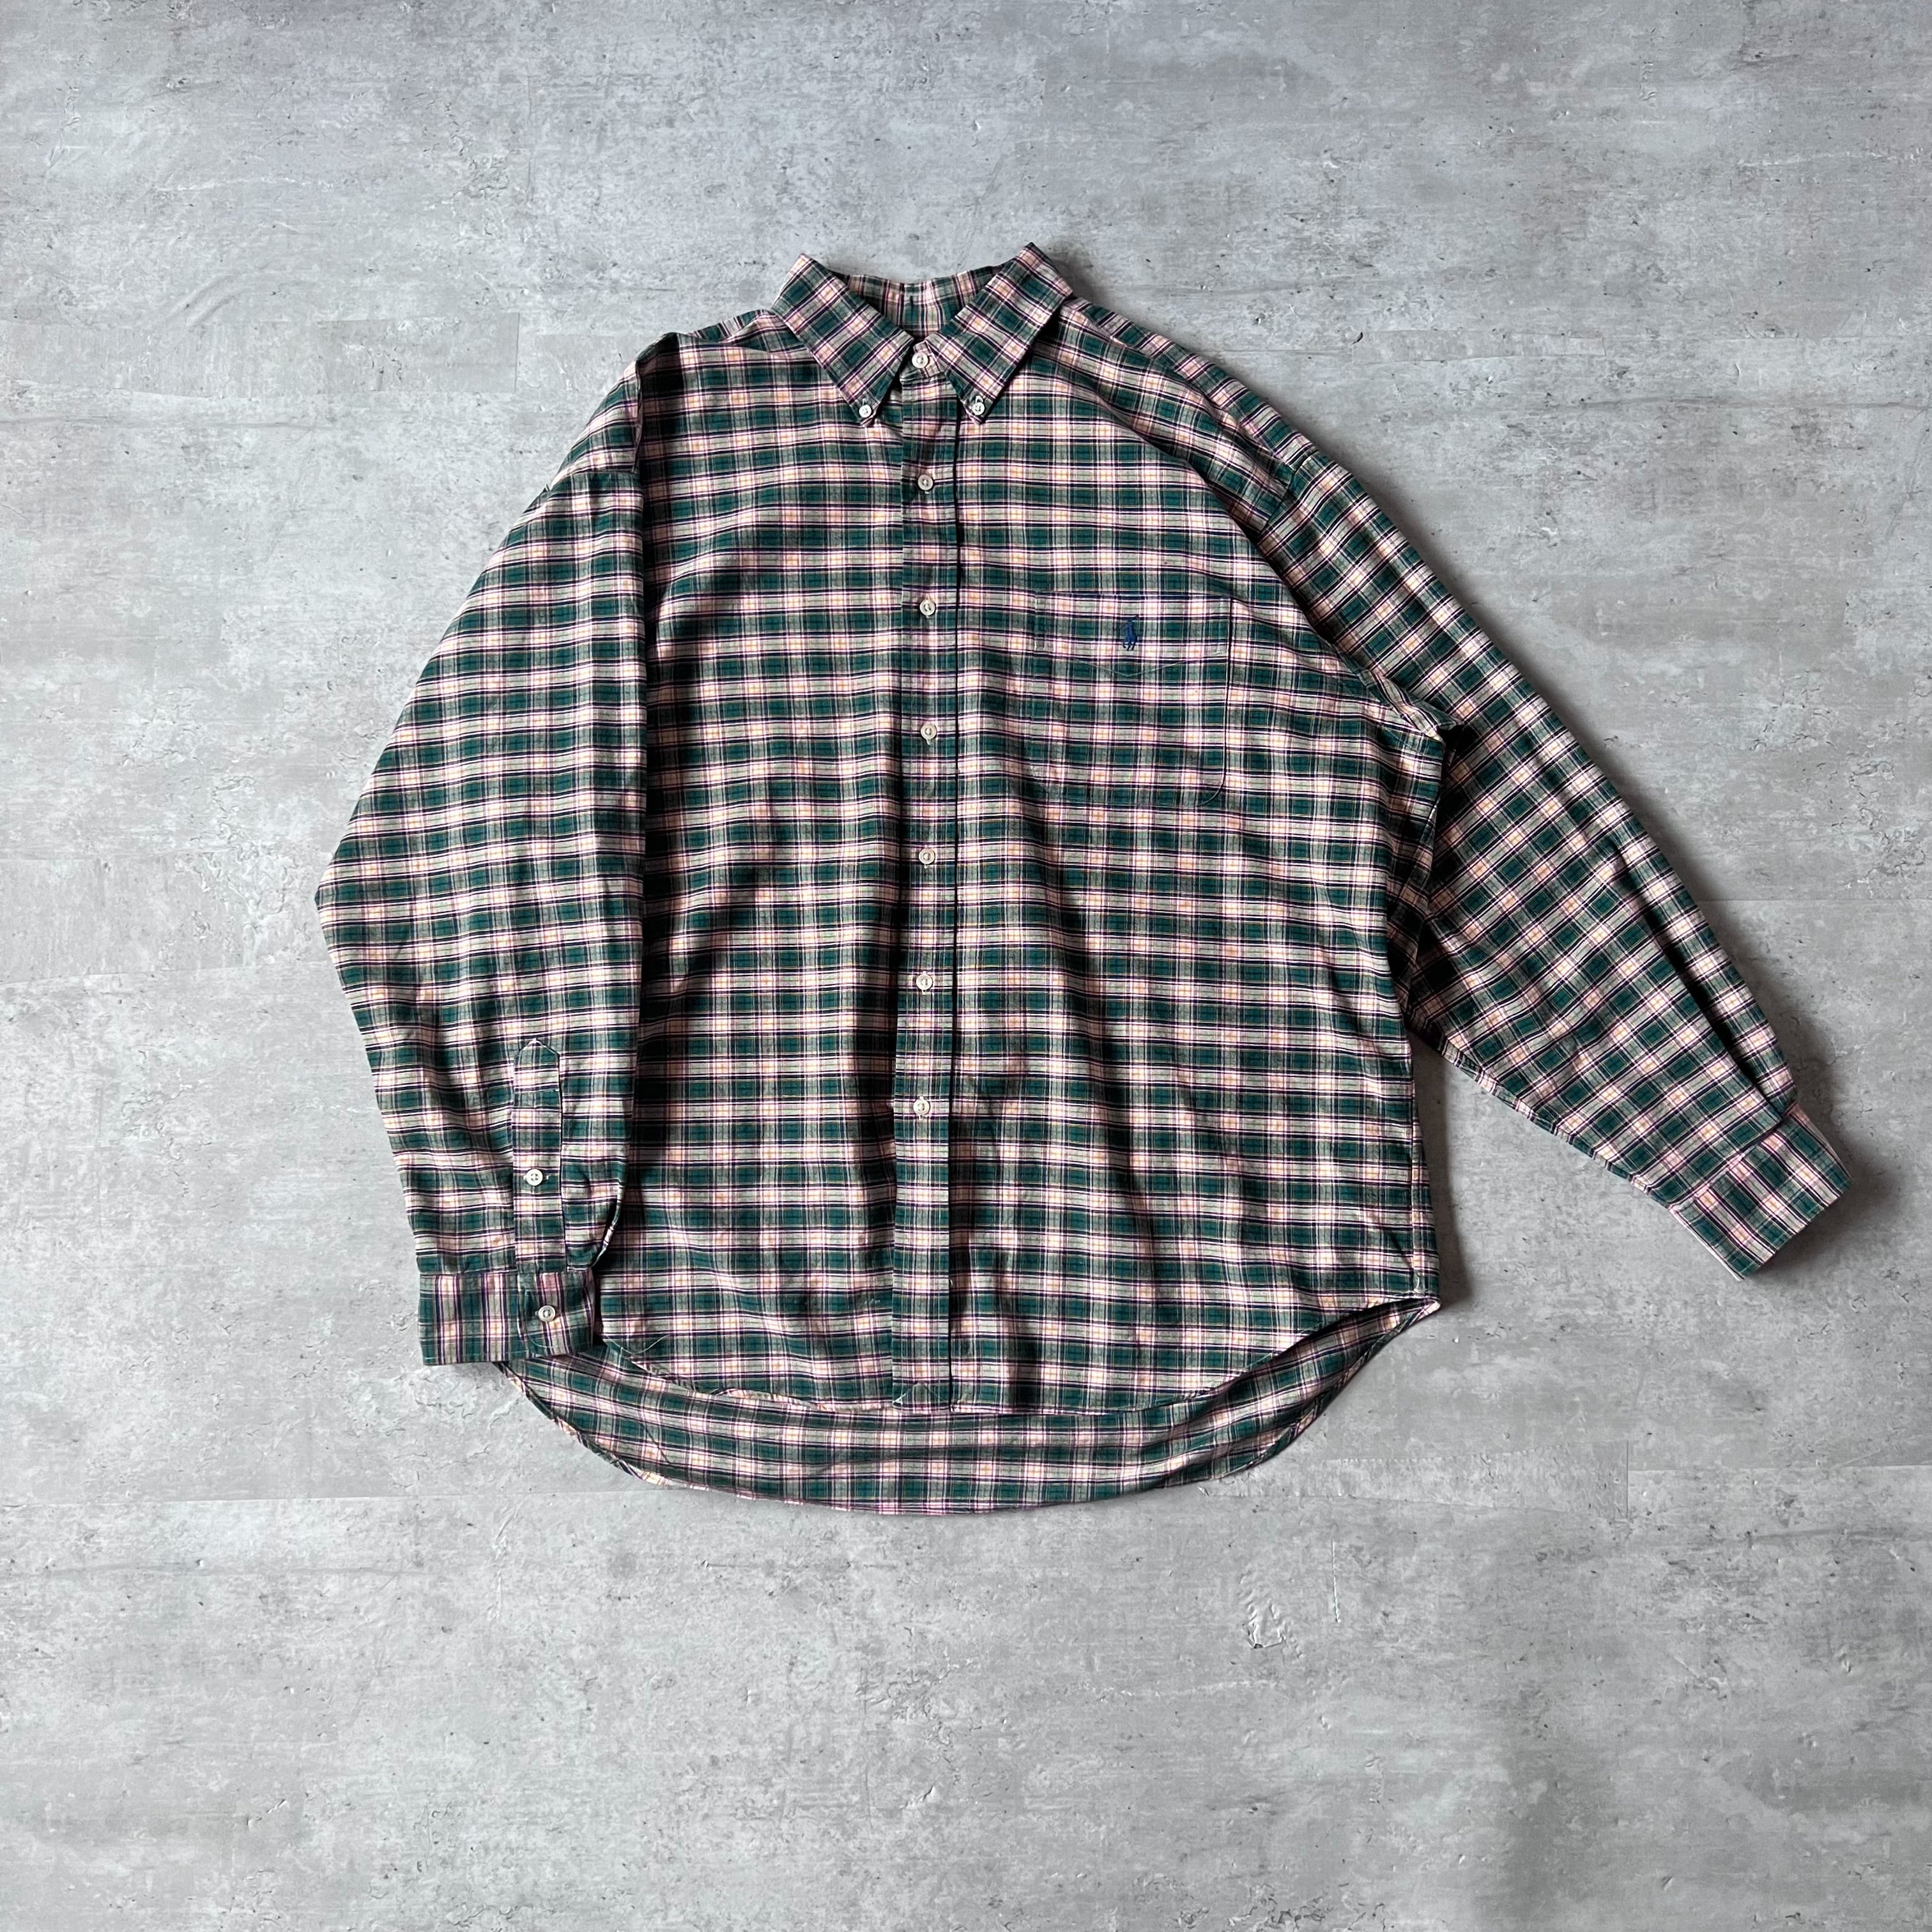 90s “Ralph Lauren” BIG SHIRT green check pattern B.D. shirt 90年代